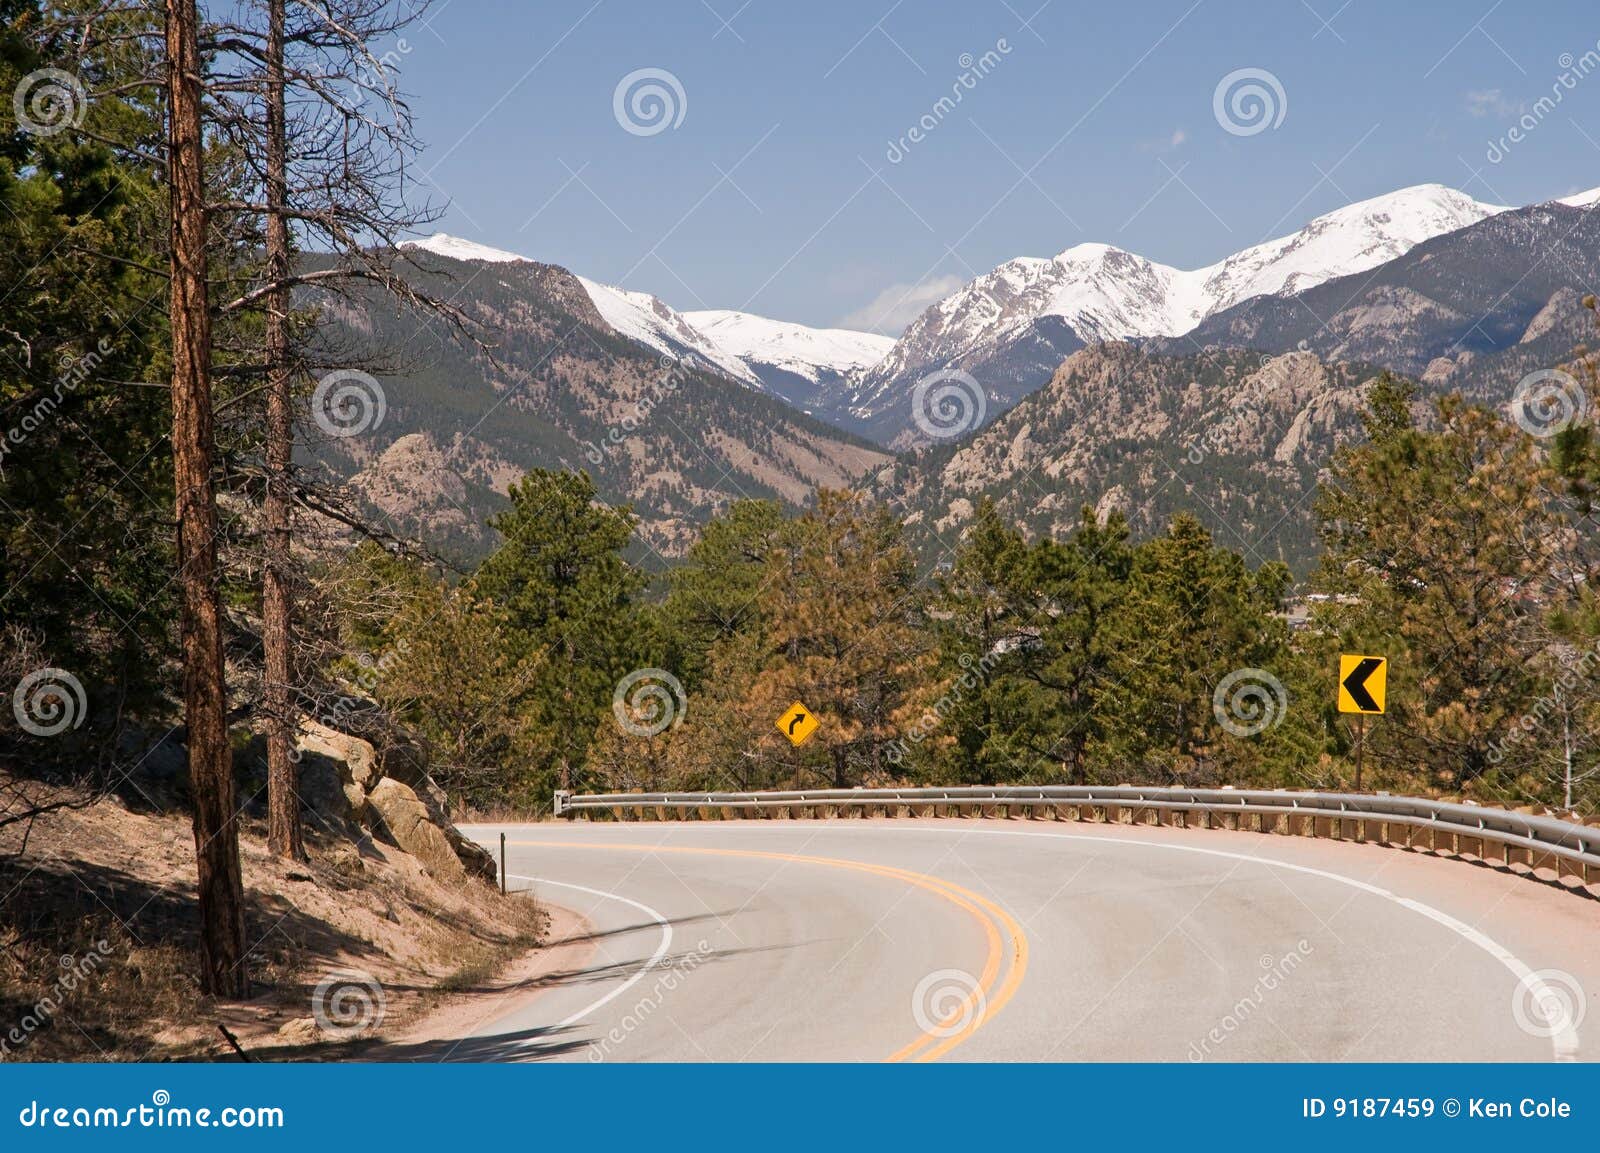 Scenic Colorado highway